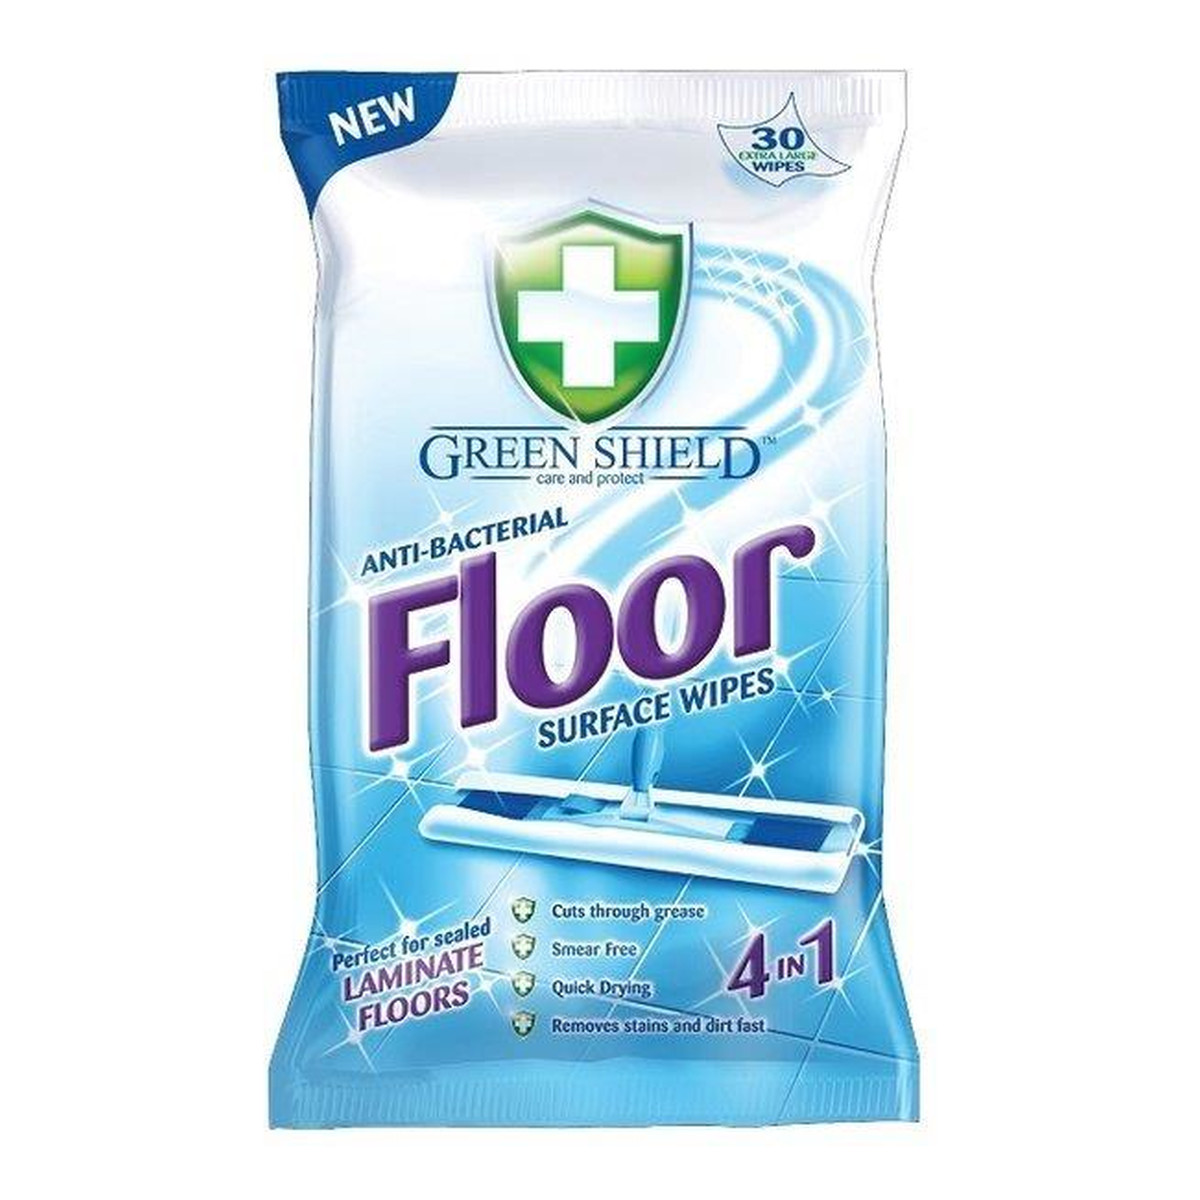 Green Shield Floor Wipes Antibacterial nawilżone chusteczki do mycia podłóg 24szt